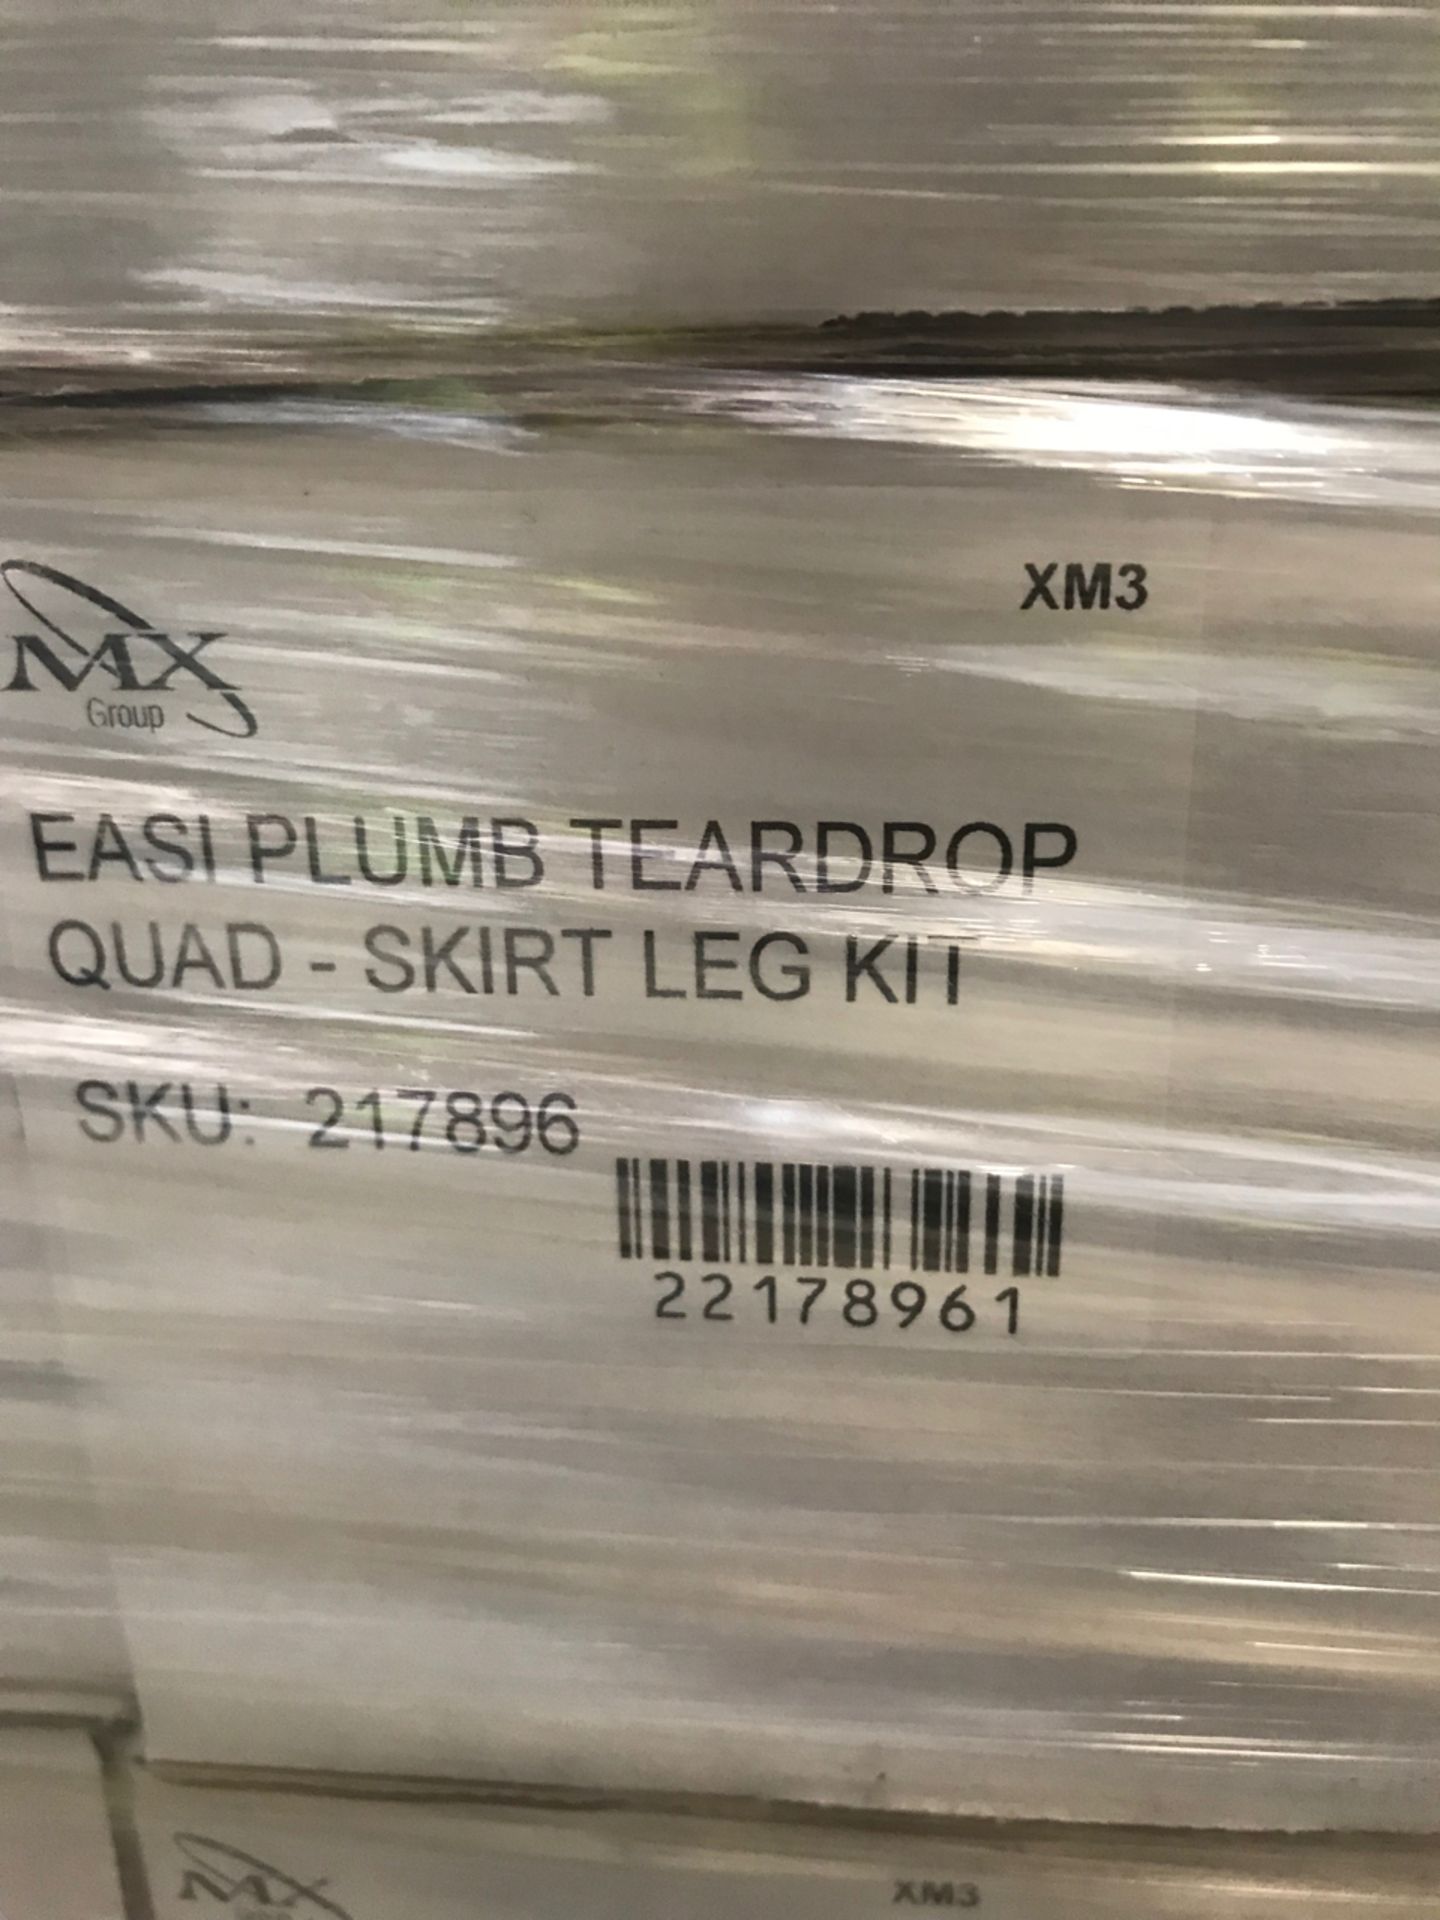 Pallet No- 47 - 17 Boxes Of Easi Plumb Teardrop Quad - Skirt Leg Kit - Image 2 of 3